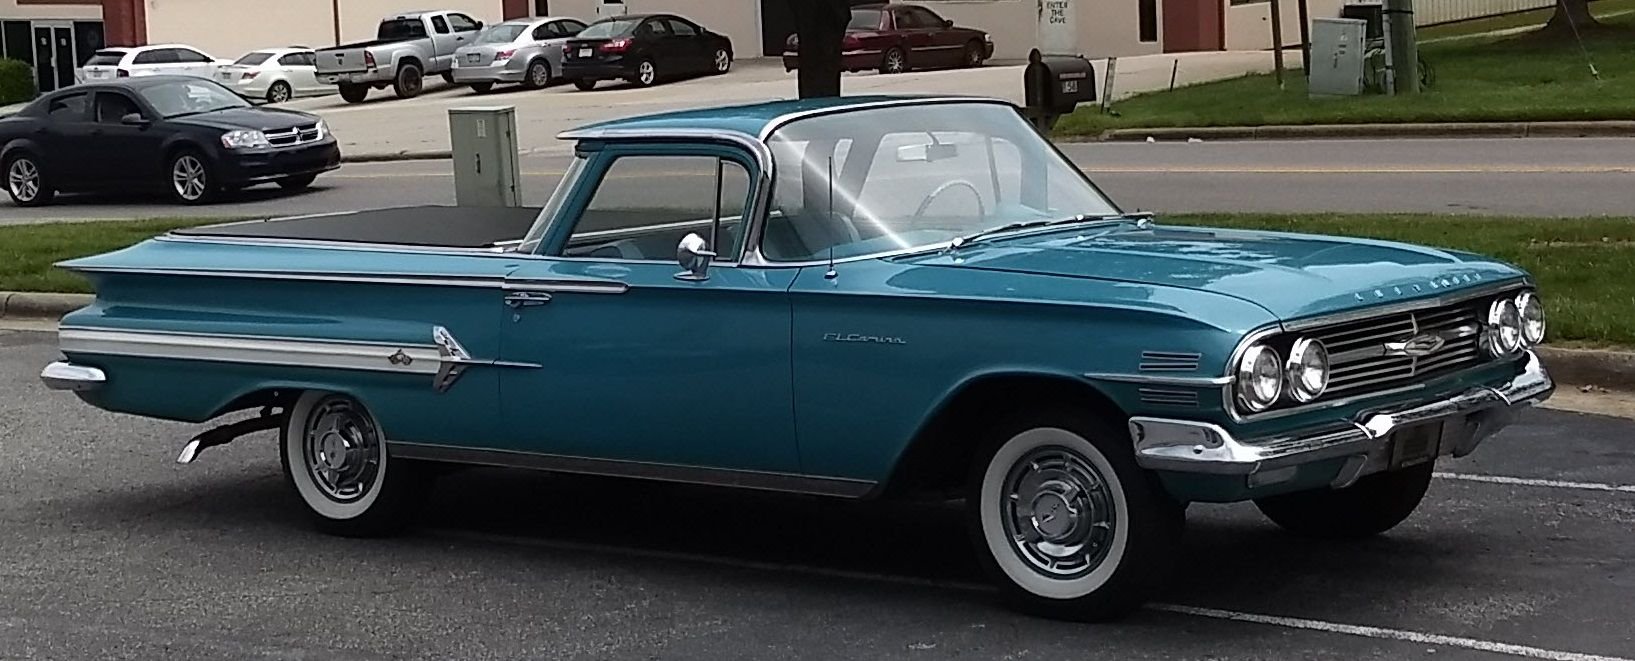 1960 Chevrolet El Camino | GAA Classic Cars